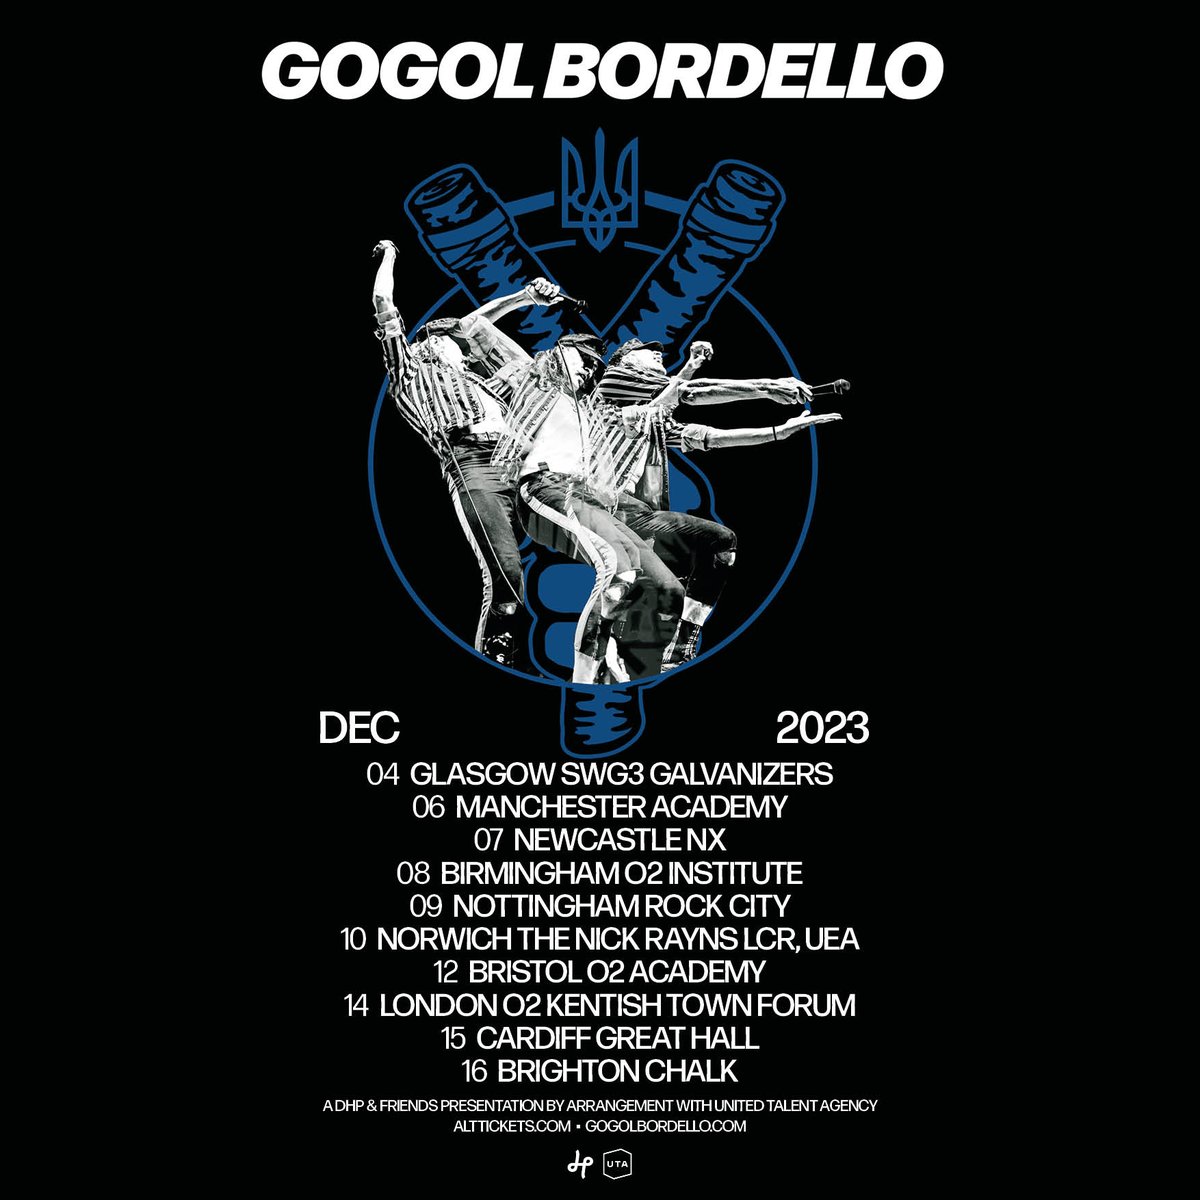 Gogol Bordello UK Tour 2023 ON SALE NOW 🎟🎟🎟 Get your tickets: gogolbordello.com/tour